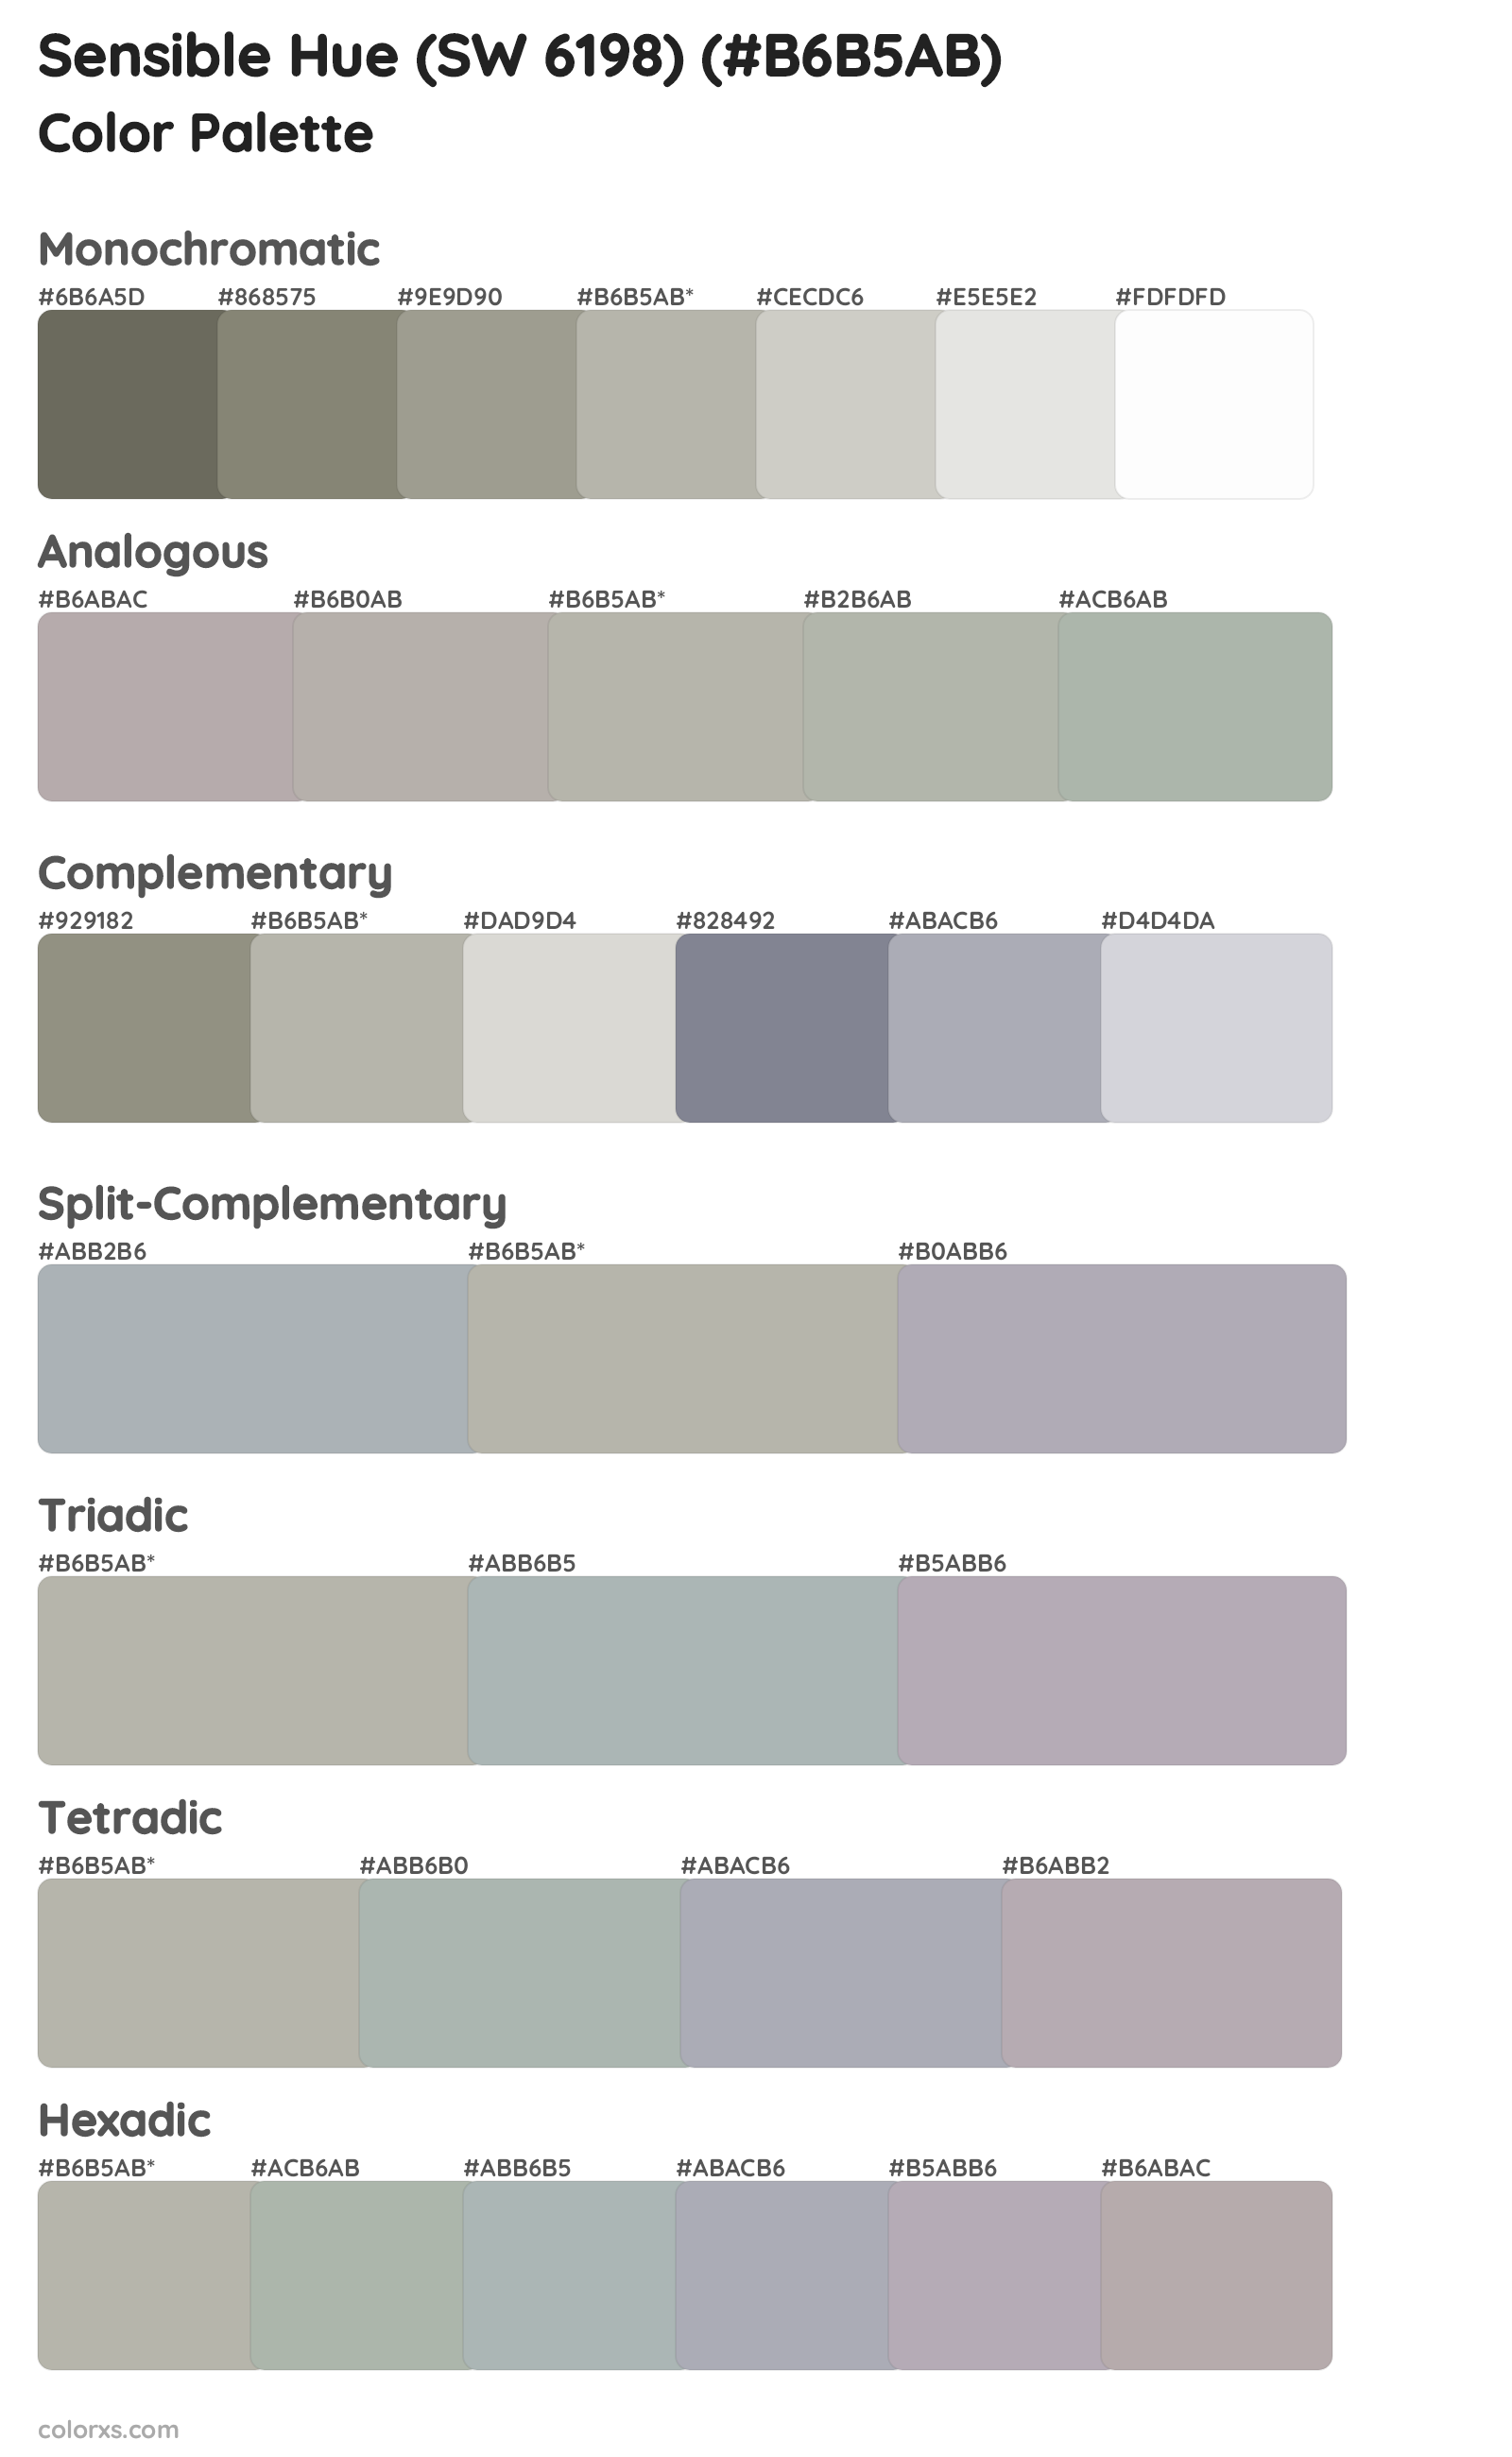 Sensible Hue (SW 6198) Color Scheme Palettes